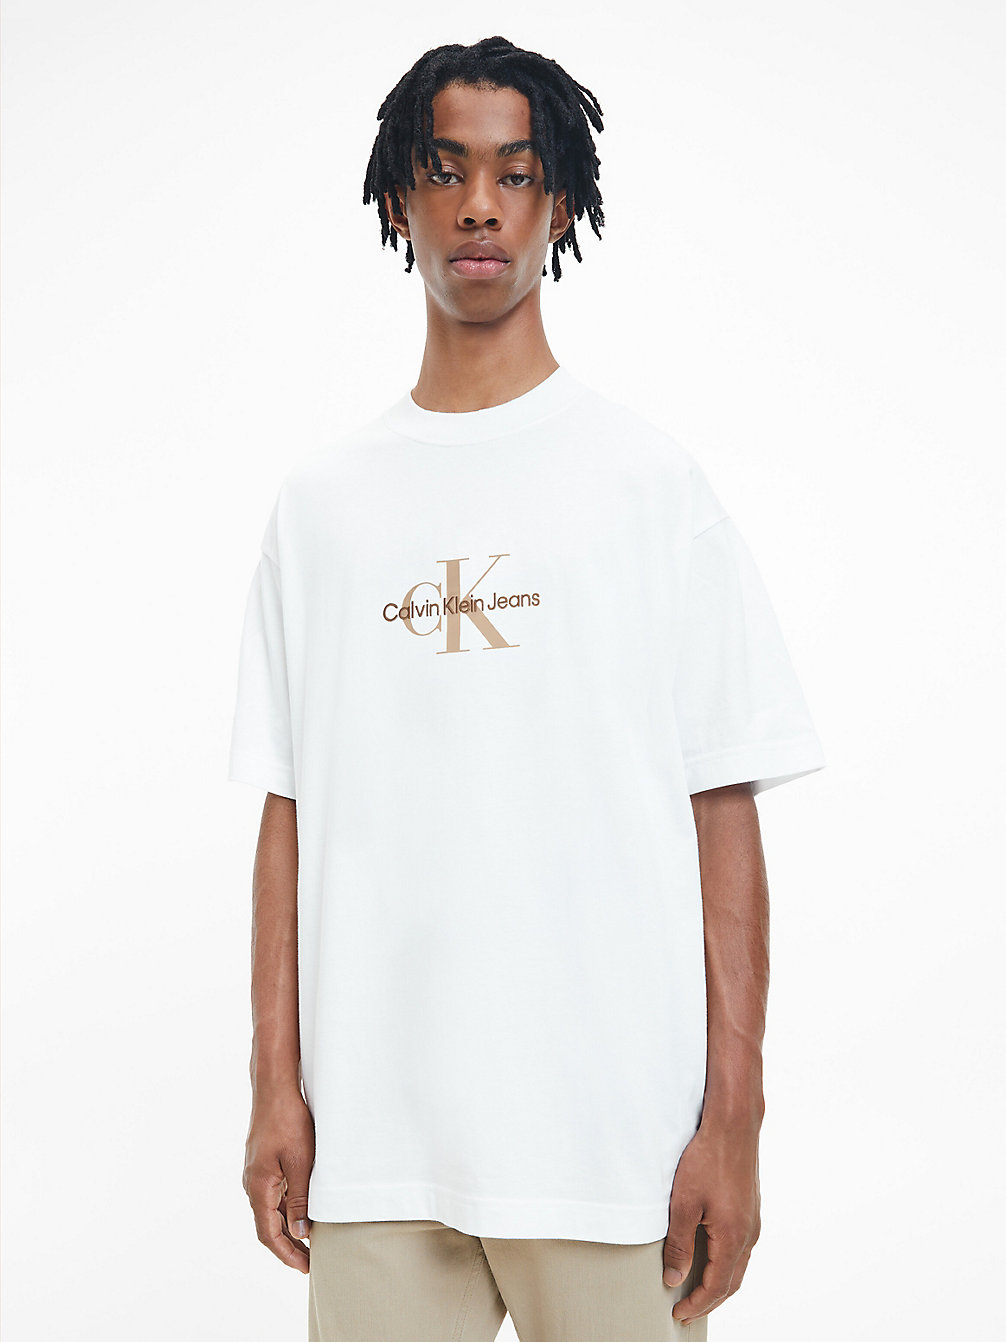 BRIGHT WHITE Oversized Monogramm-T-Shirt undefined Herren Calvin Klein